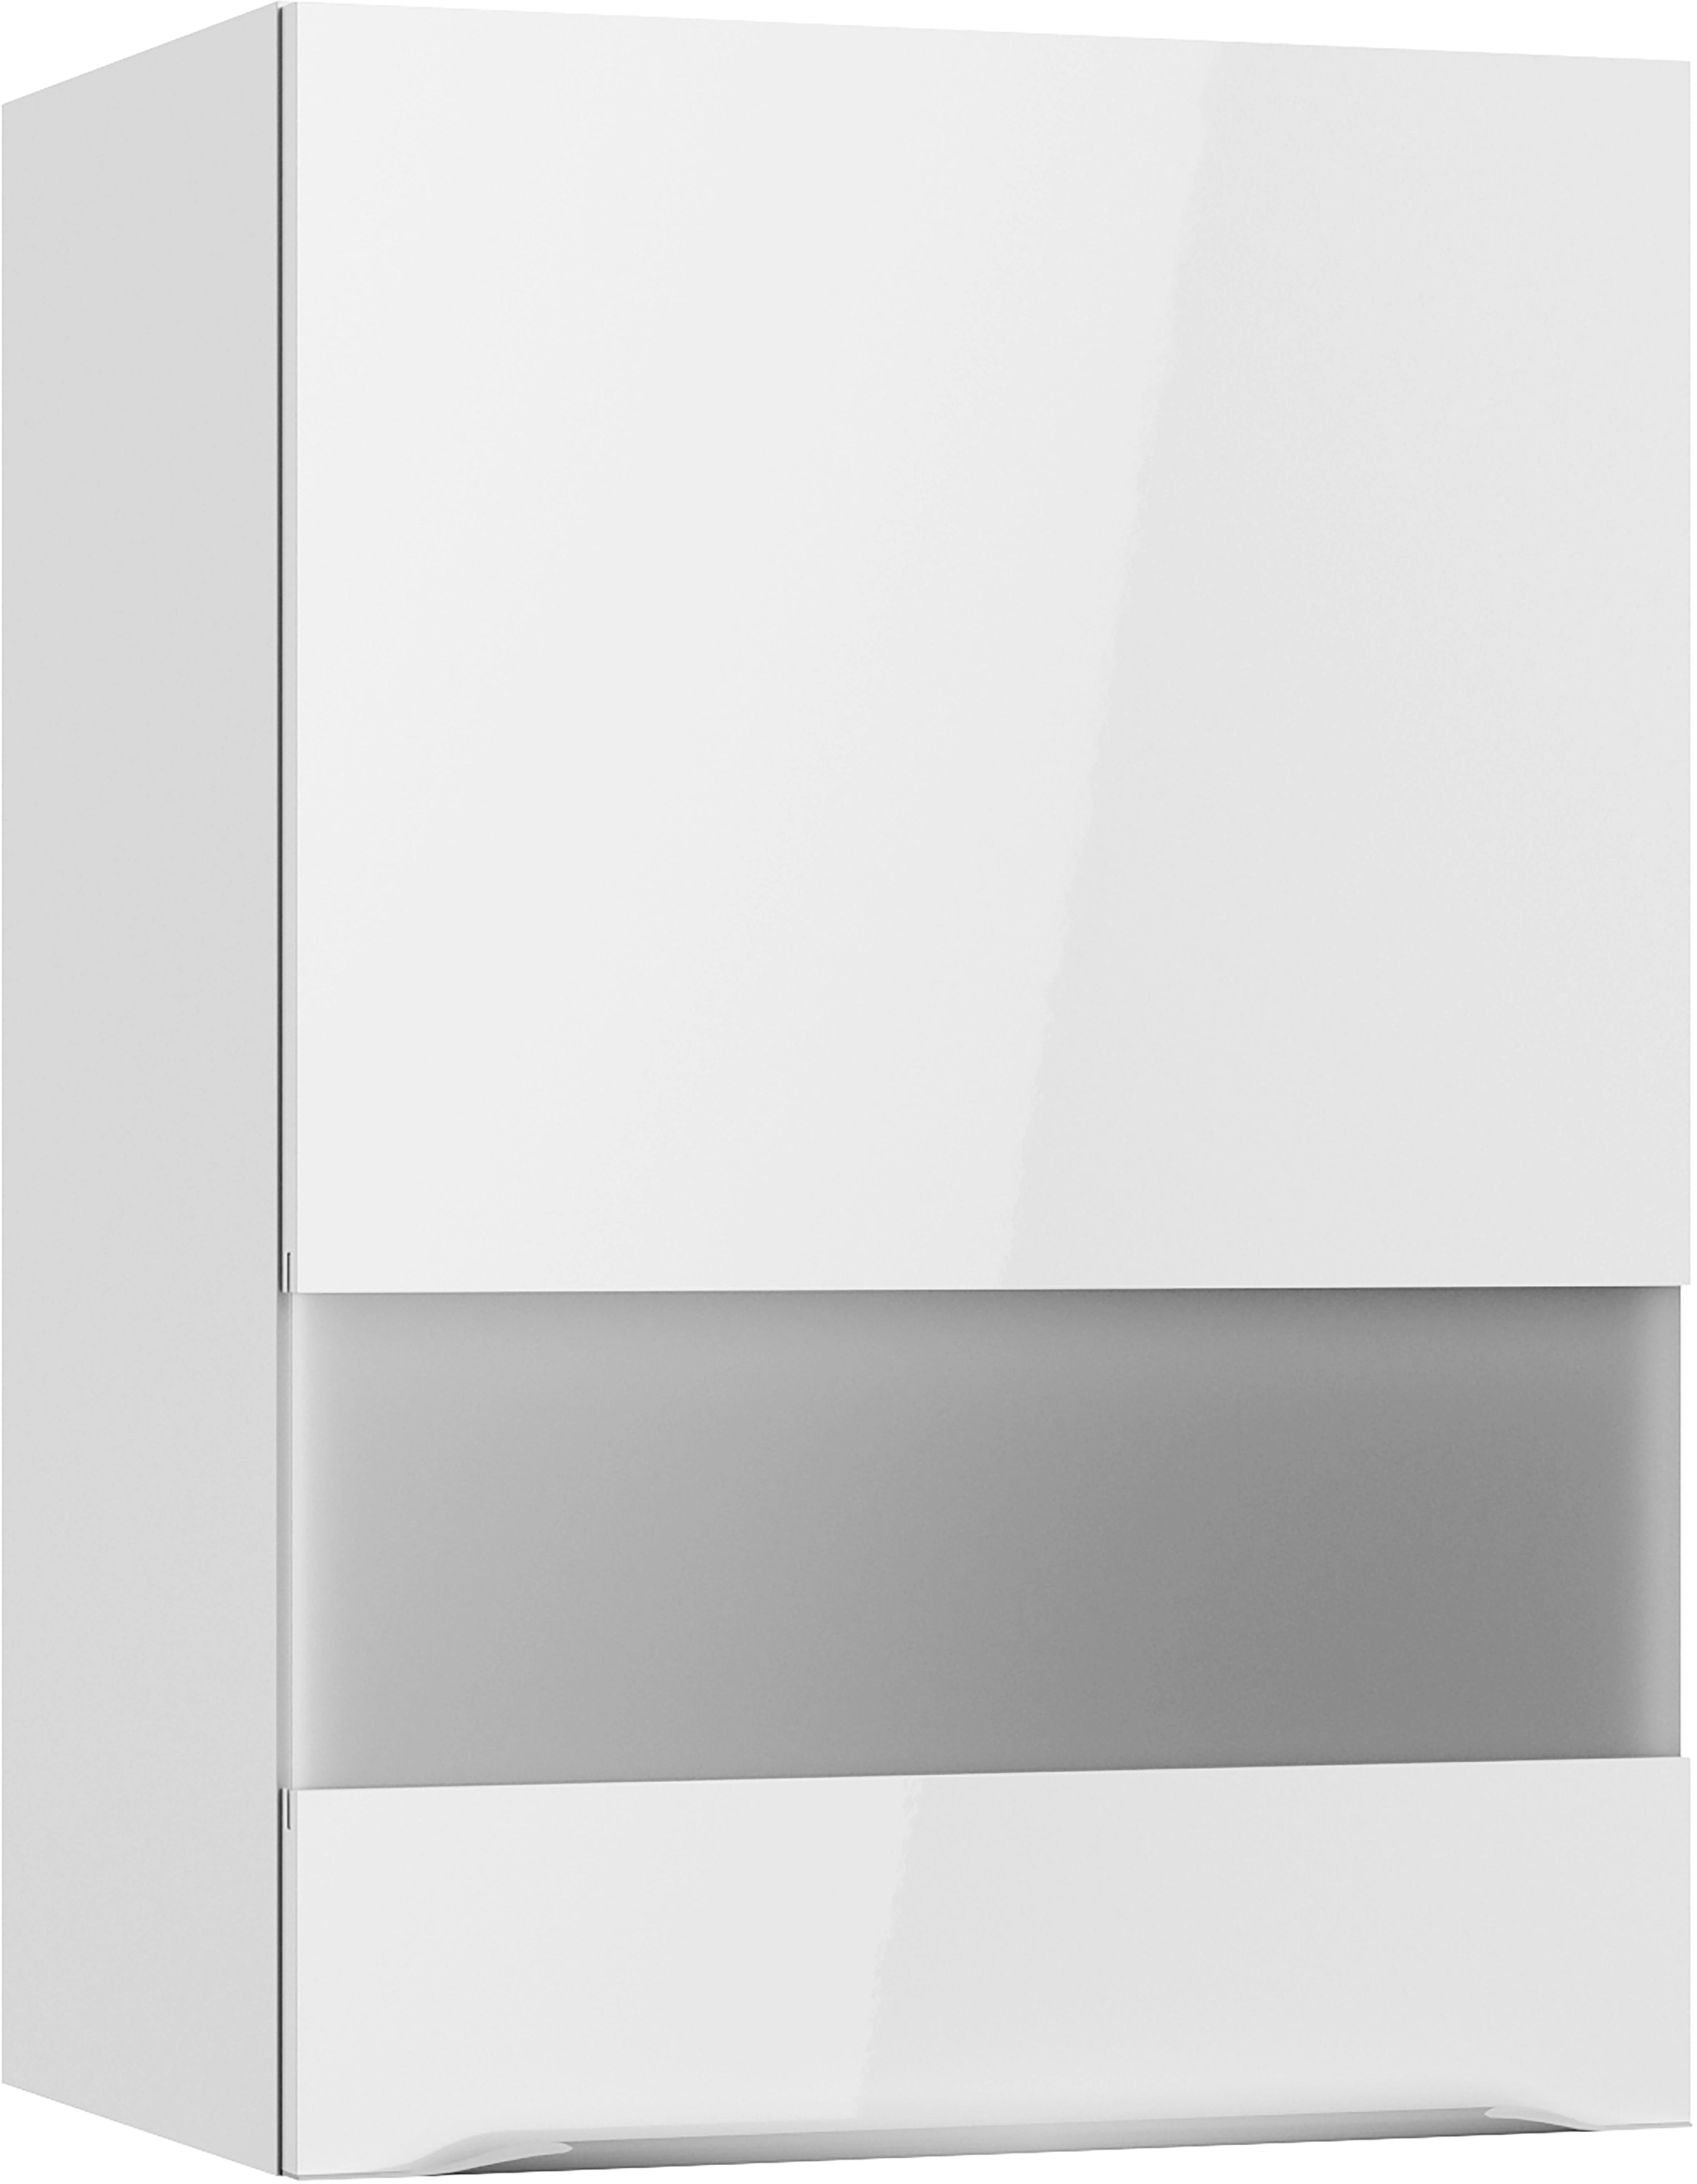 Optifit Oberschrank mit Glassegment Arvid986 50 cm x 70,4 cm x 34,9 cm Weiß  kaufen bei OBI